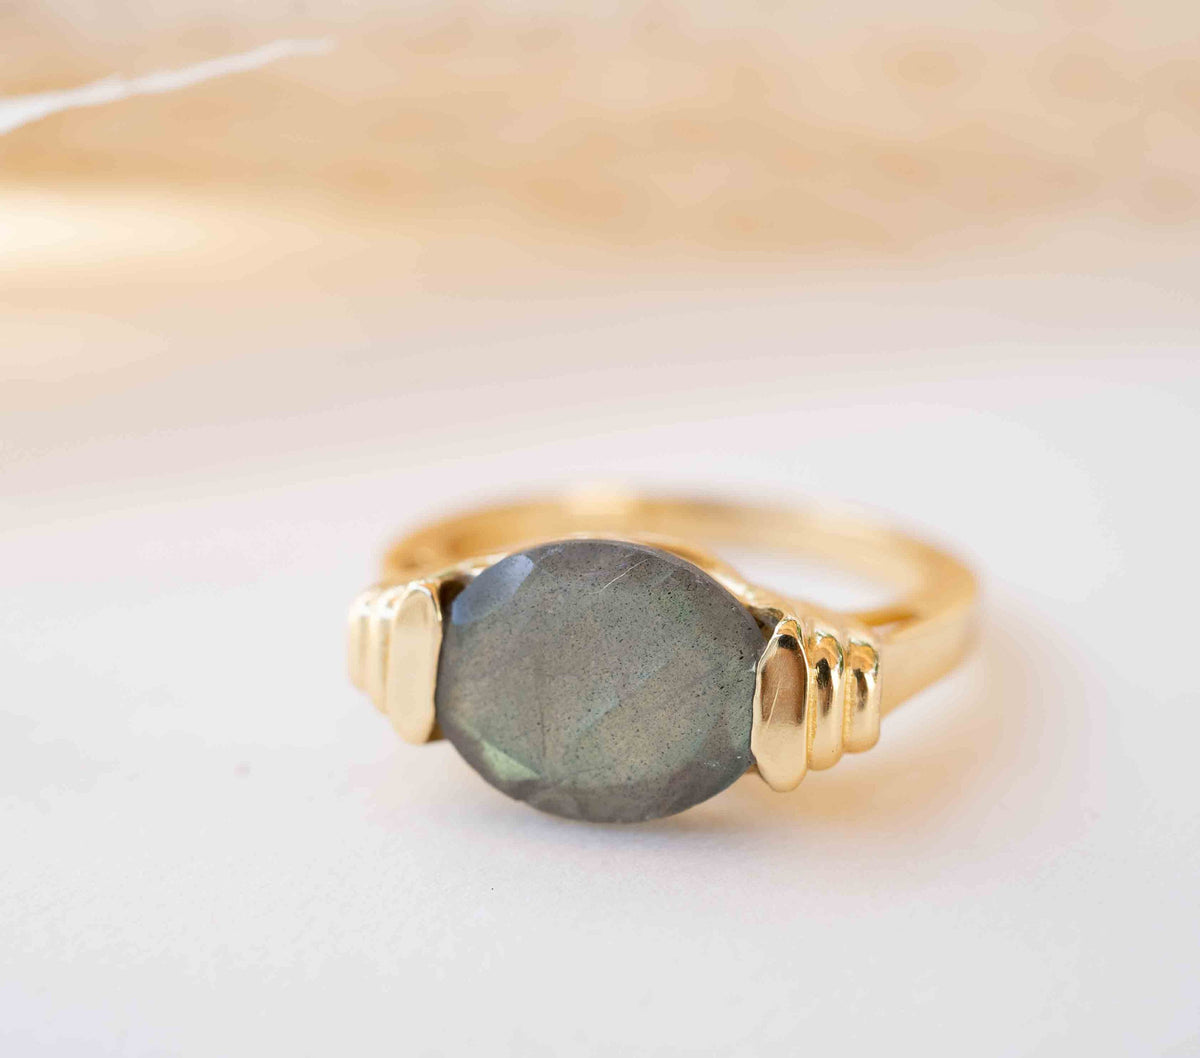 Labradorite Ring * Gold Plated Ring * Statement Ring *Gemstone Ring * Labradorite * Delicate Ring * Modern * BJR275